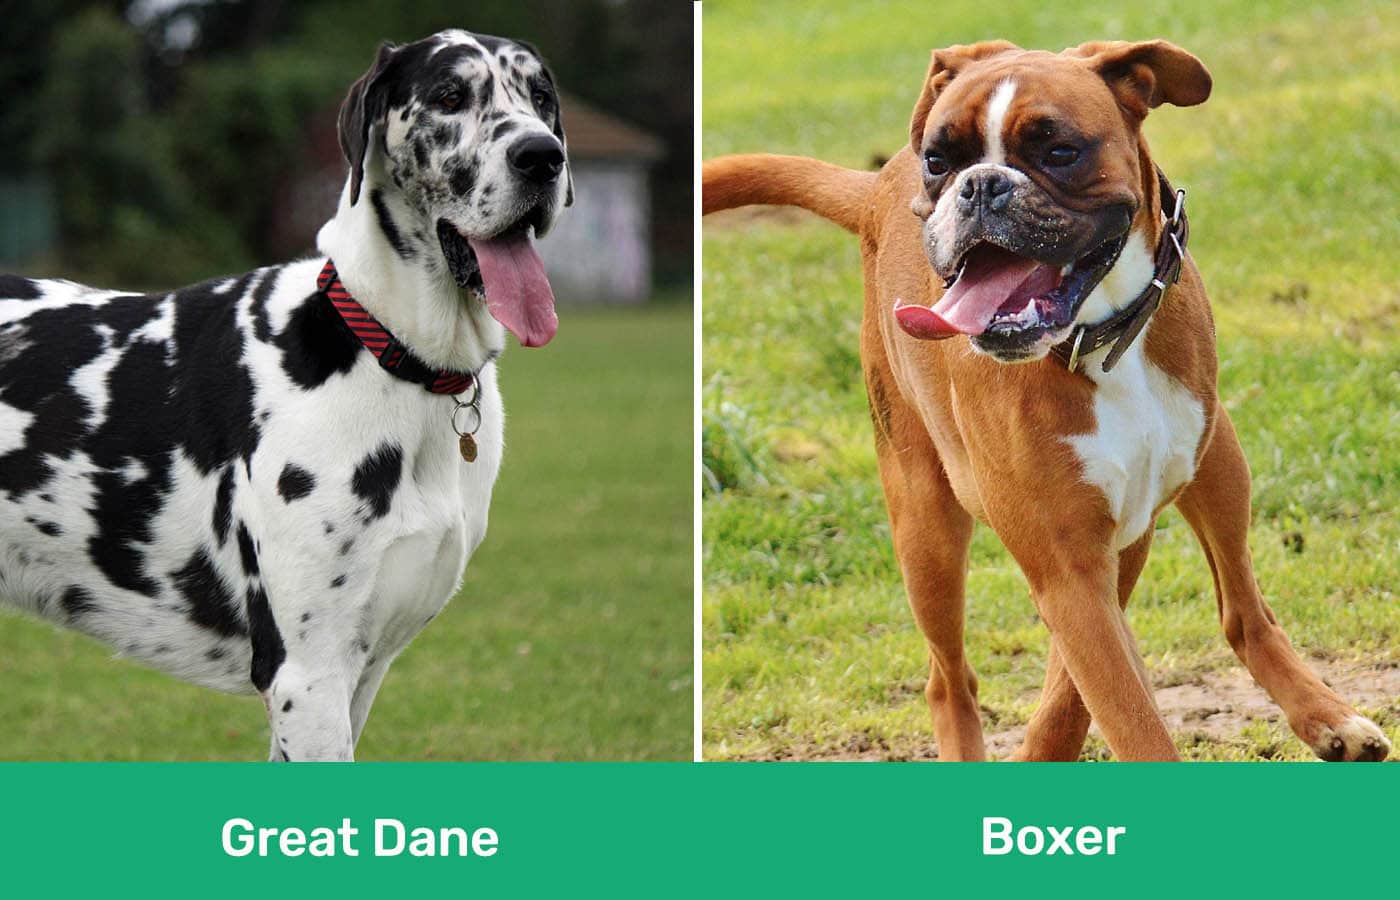 Great Dane vs Boxer side by side